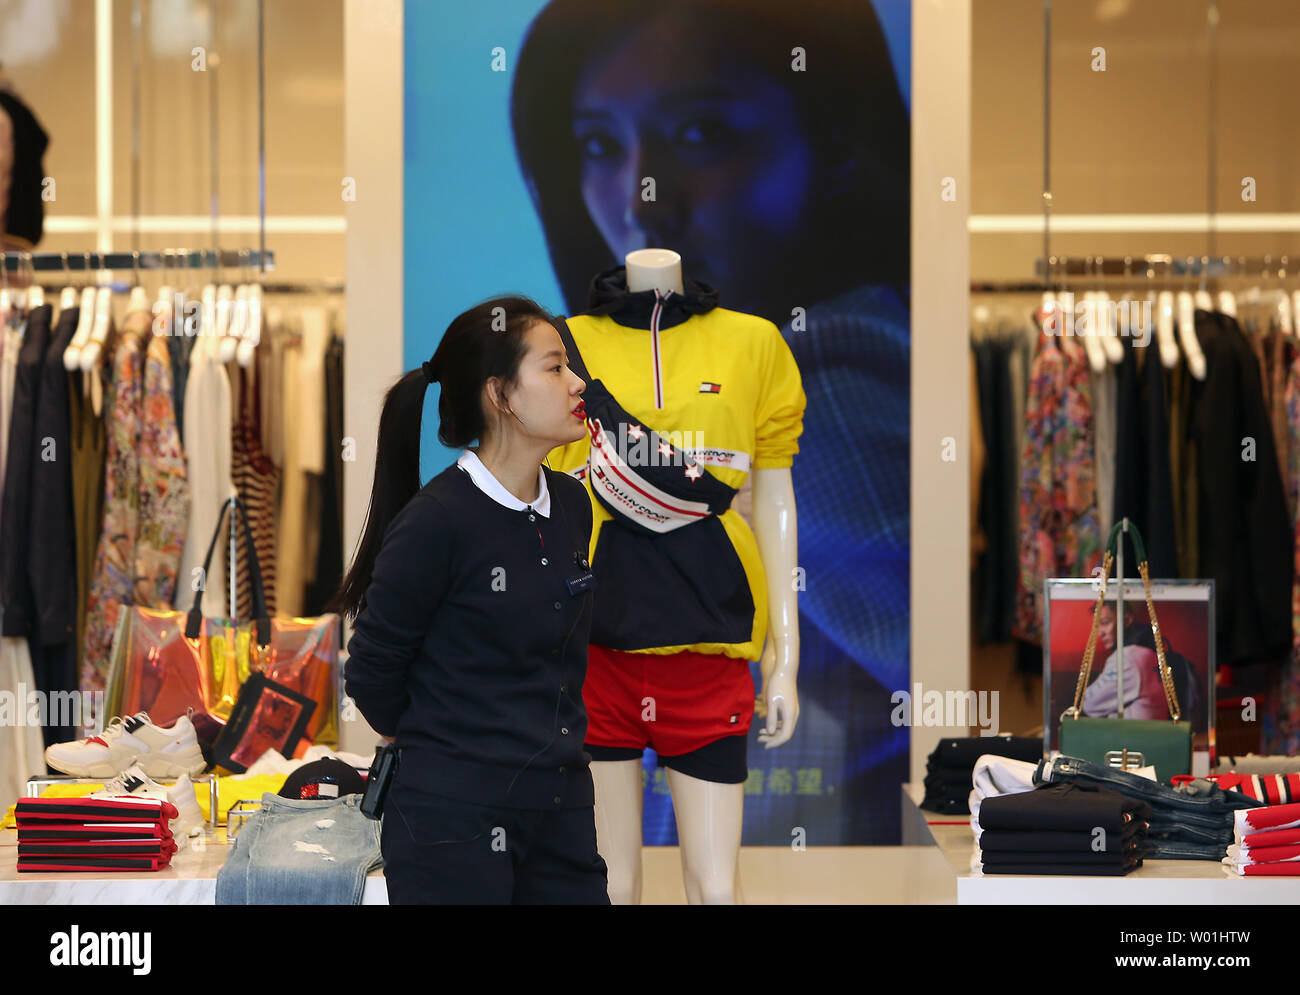 Un operador de tienda espera a compradores en Tommy Hilfiger usa la tienda insignia en Beijing el 30 de abril de 2019. A pesar los continuos conflictos comerciales y derechos